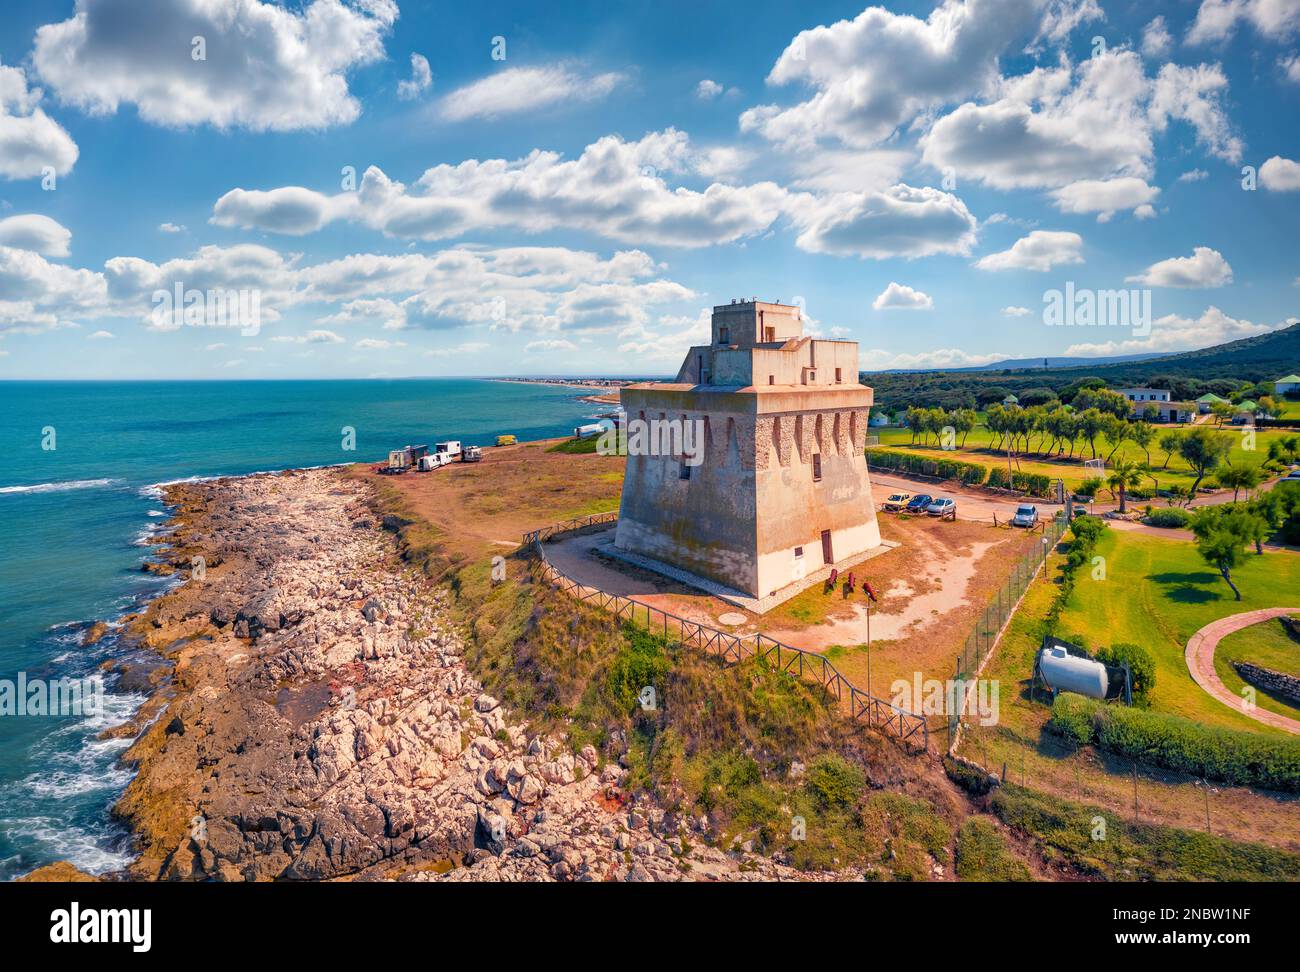 Landschaftsfotografie aus der Luft. Atemberaubender Sommerblick von der fliegenden Drohne des Torre Mileto Turms. Atemberaubende Morgenszene von Apulien, Italien, Europa. Auf Reisen Stockfoto